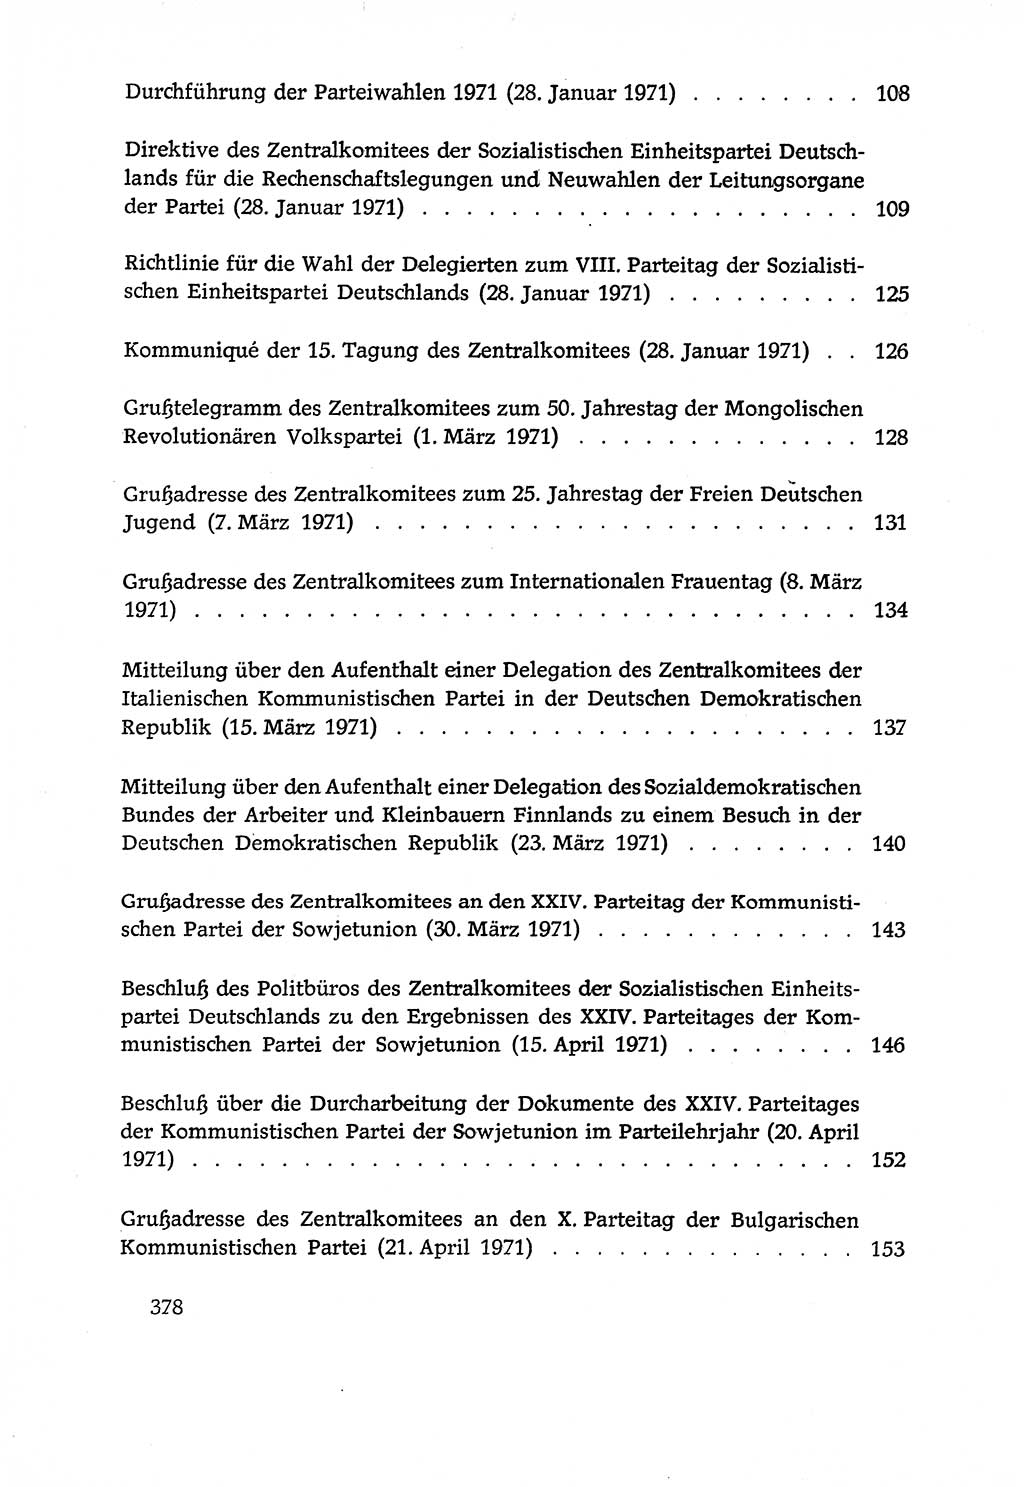 Dokumente der Sozialistischen Einheitspartei Deutschlands (SED) [Deutsche Demokratische Republik (DDR)] 1970-1971, Seite 378 (Dok. SED DDR 1970-1971, S. 378)